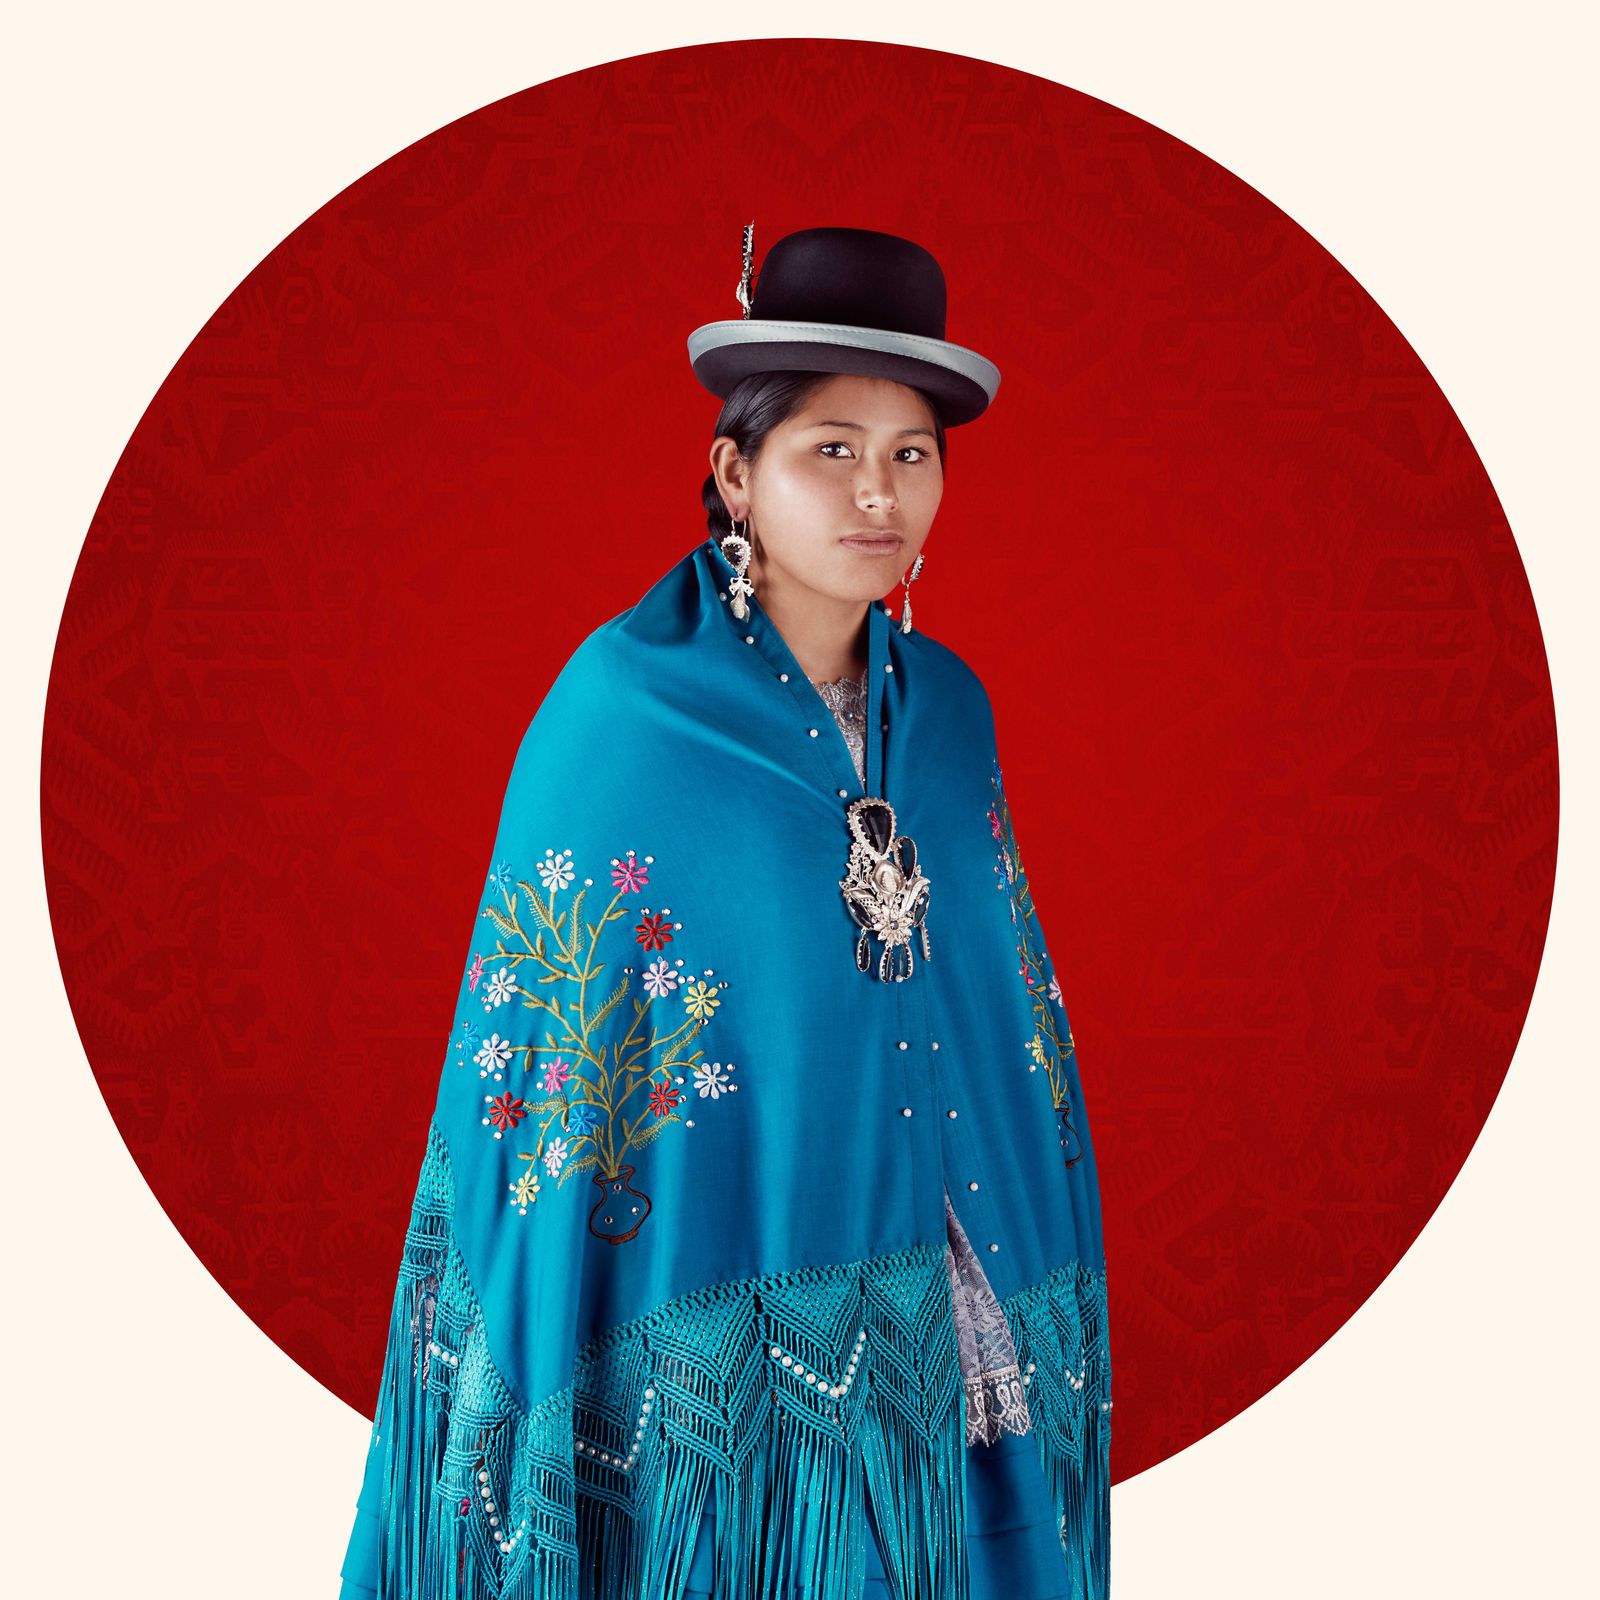 © Blast Delphine - Portrait of a cholita posing in a studio in La Paz, Bolivia, March 2016